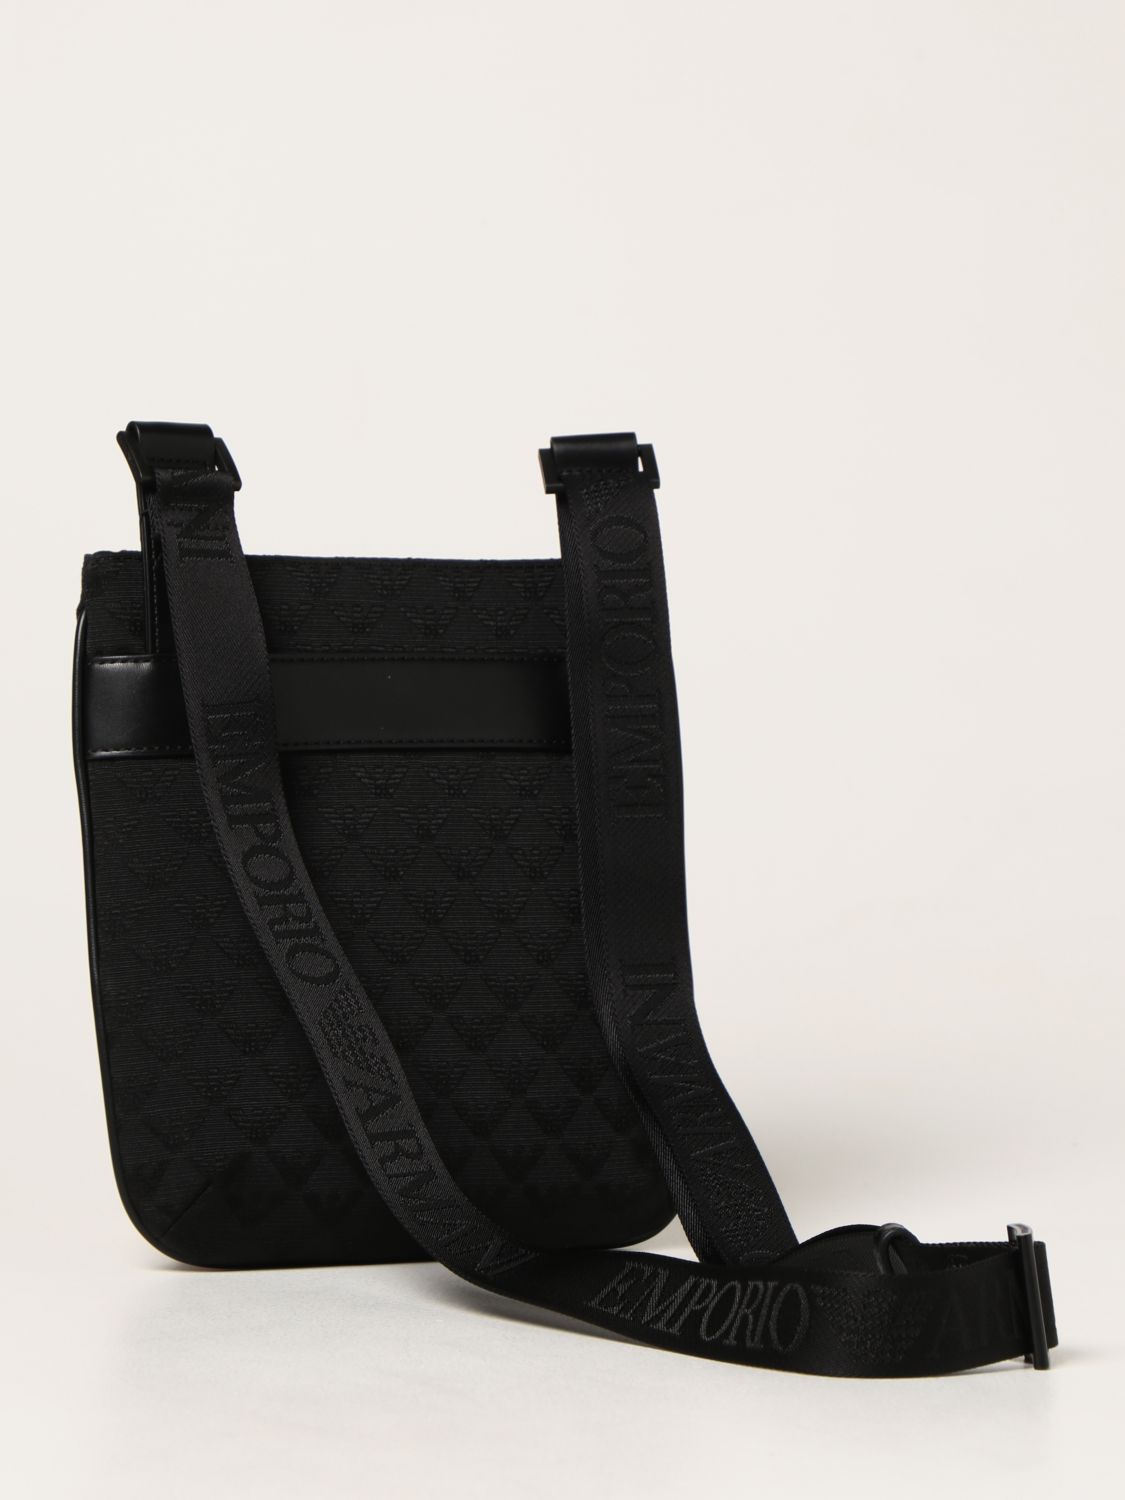 EMPORIO ARMANI: bag in synthetic leather and nylon - Black  Emporio Armani  shoulder bag Y4M234Y022V online at